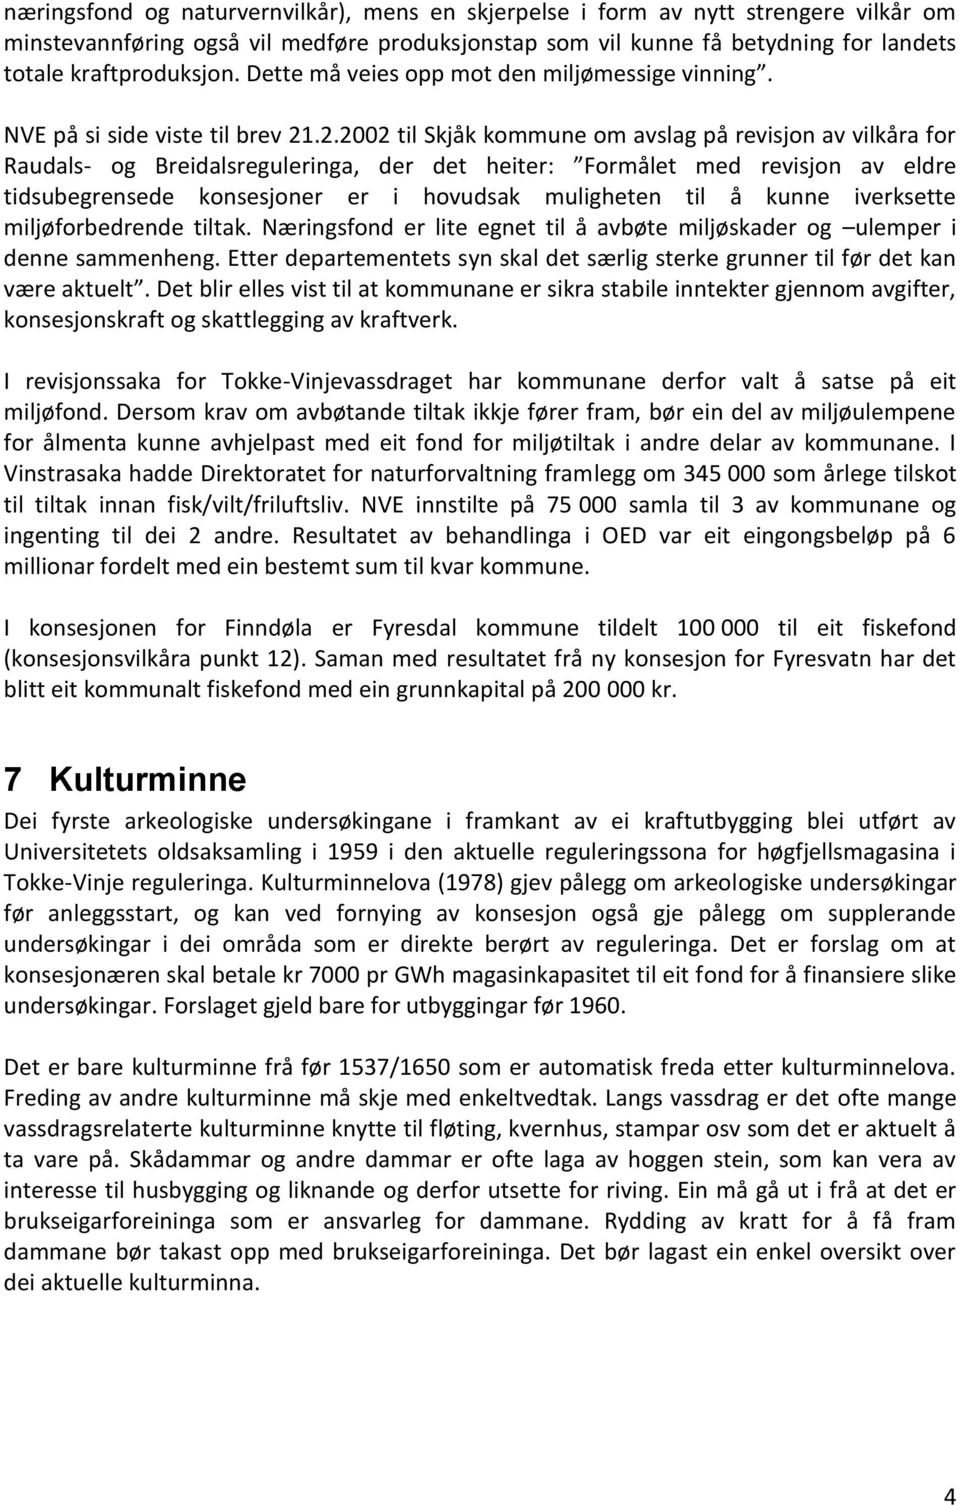 .2.2002 til Skjåk kommune om avslag på revisjon av vilkåra for Raudals- og Breidalsreguleringa, der det heiter: Formålet med revisjon av eldre tidsubegrensede konsesjoner er i hovudsak muligheten til